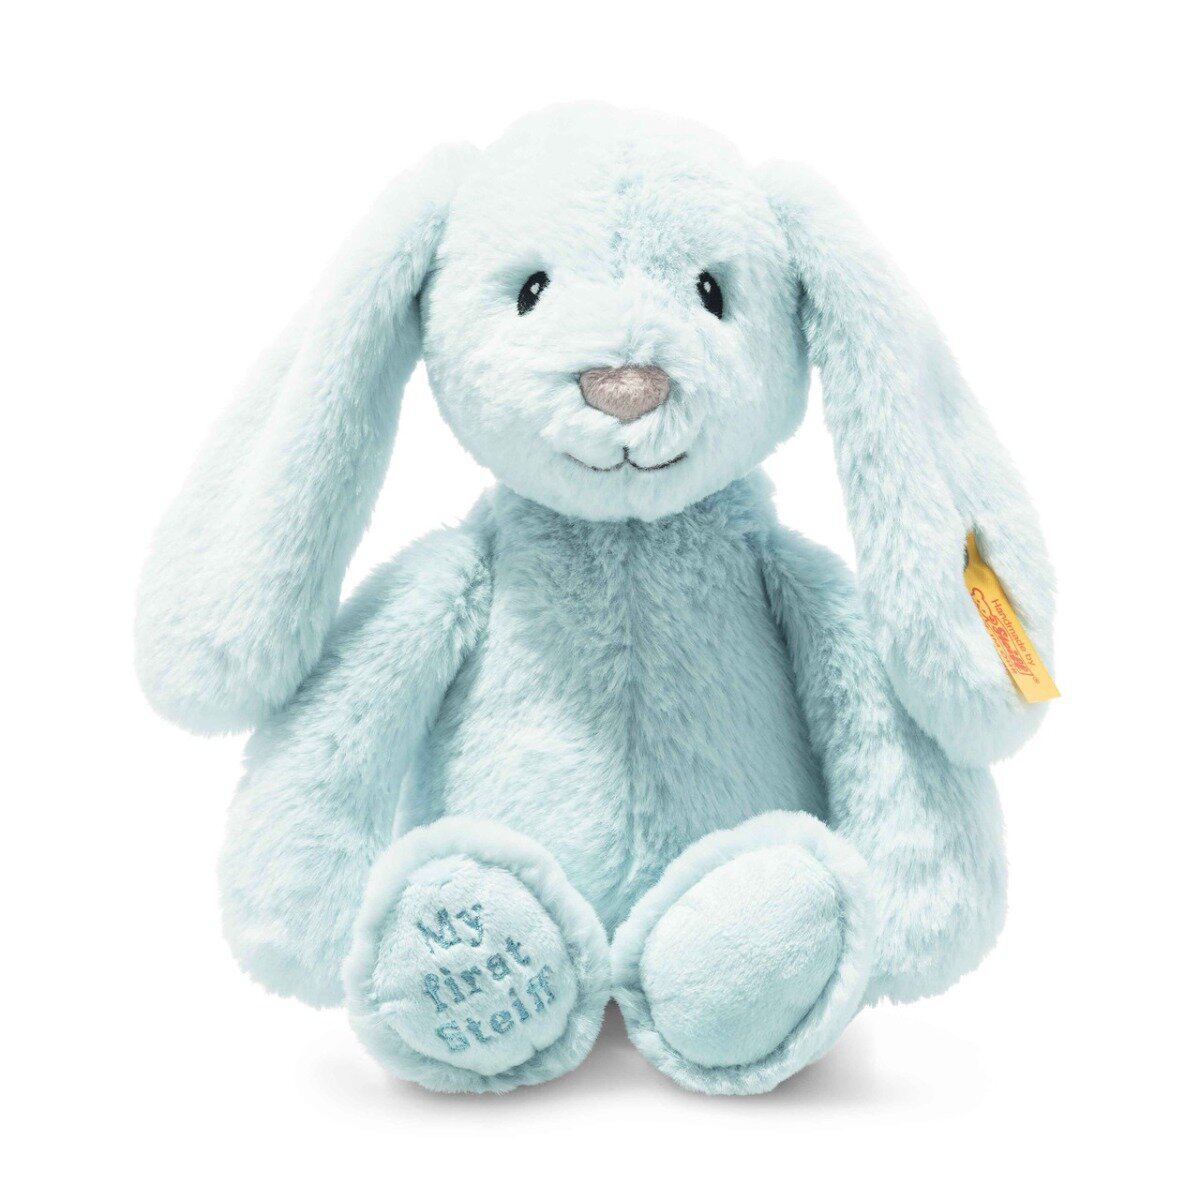 Мягкая игрушка Steiff Soft Cuddly Friends My first Steiff Hoppie rabbit blue (Штайф мягкие приятные друзья Мой первый кролик Хоппи 26 см голубой)